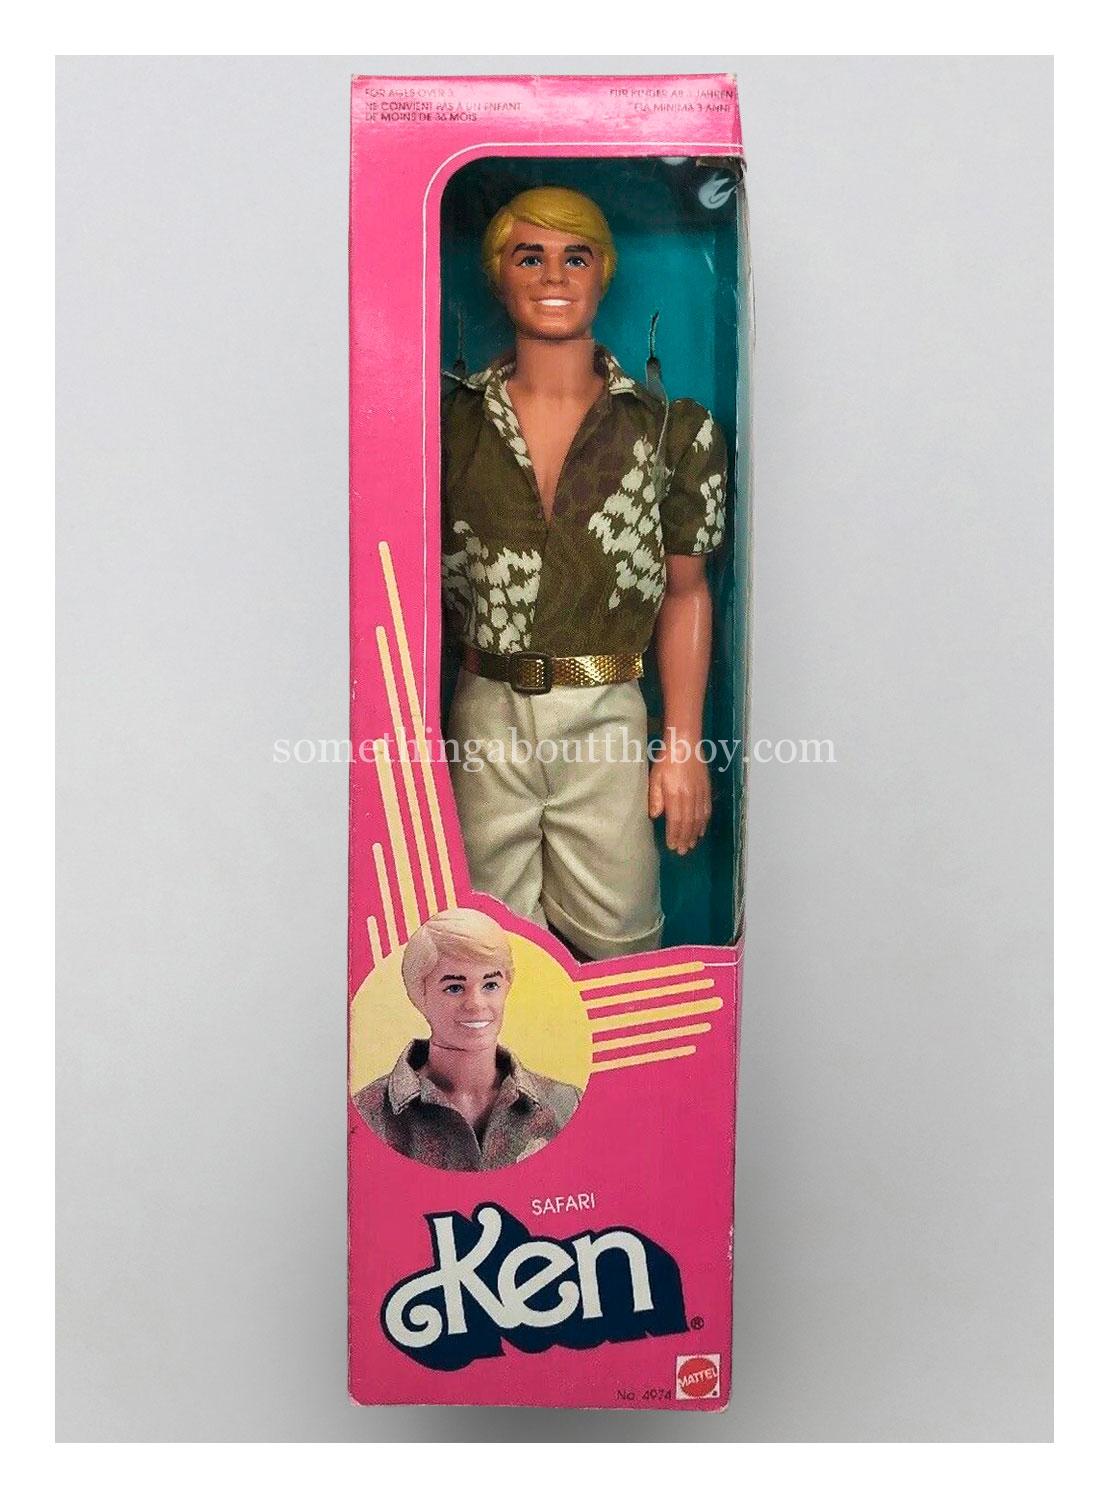 1984 #4974 Safari Ken in European packaging